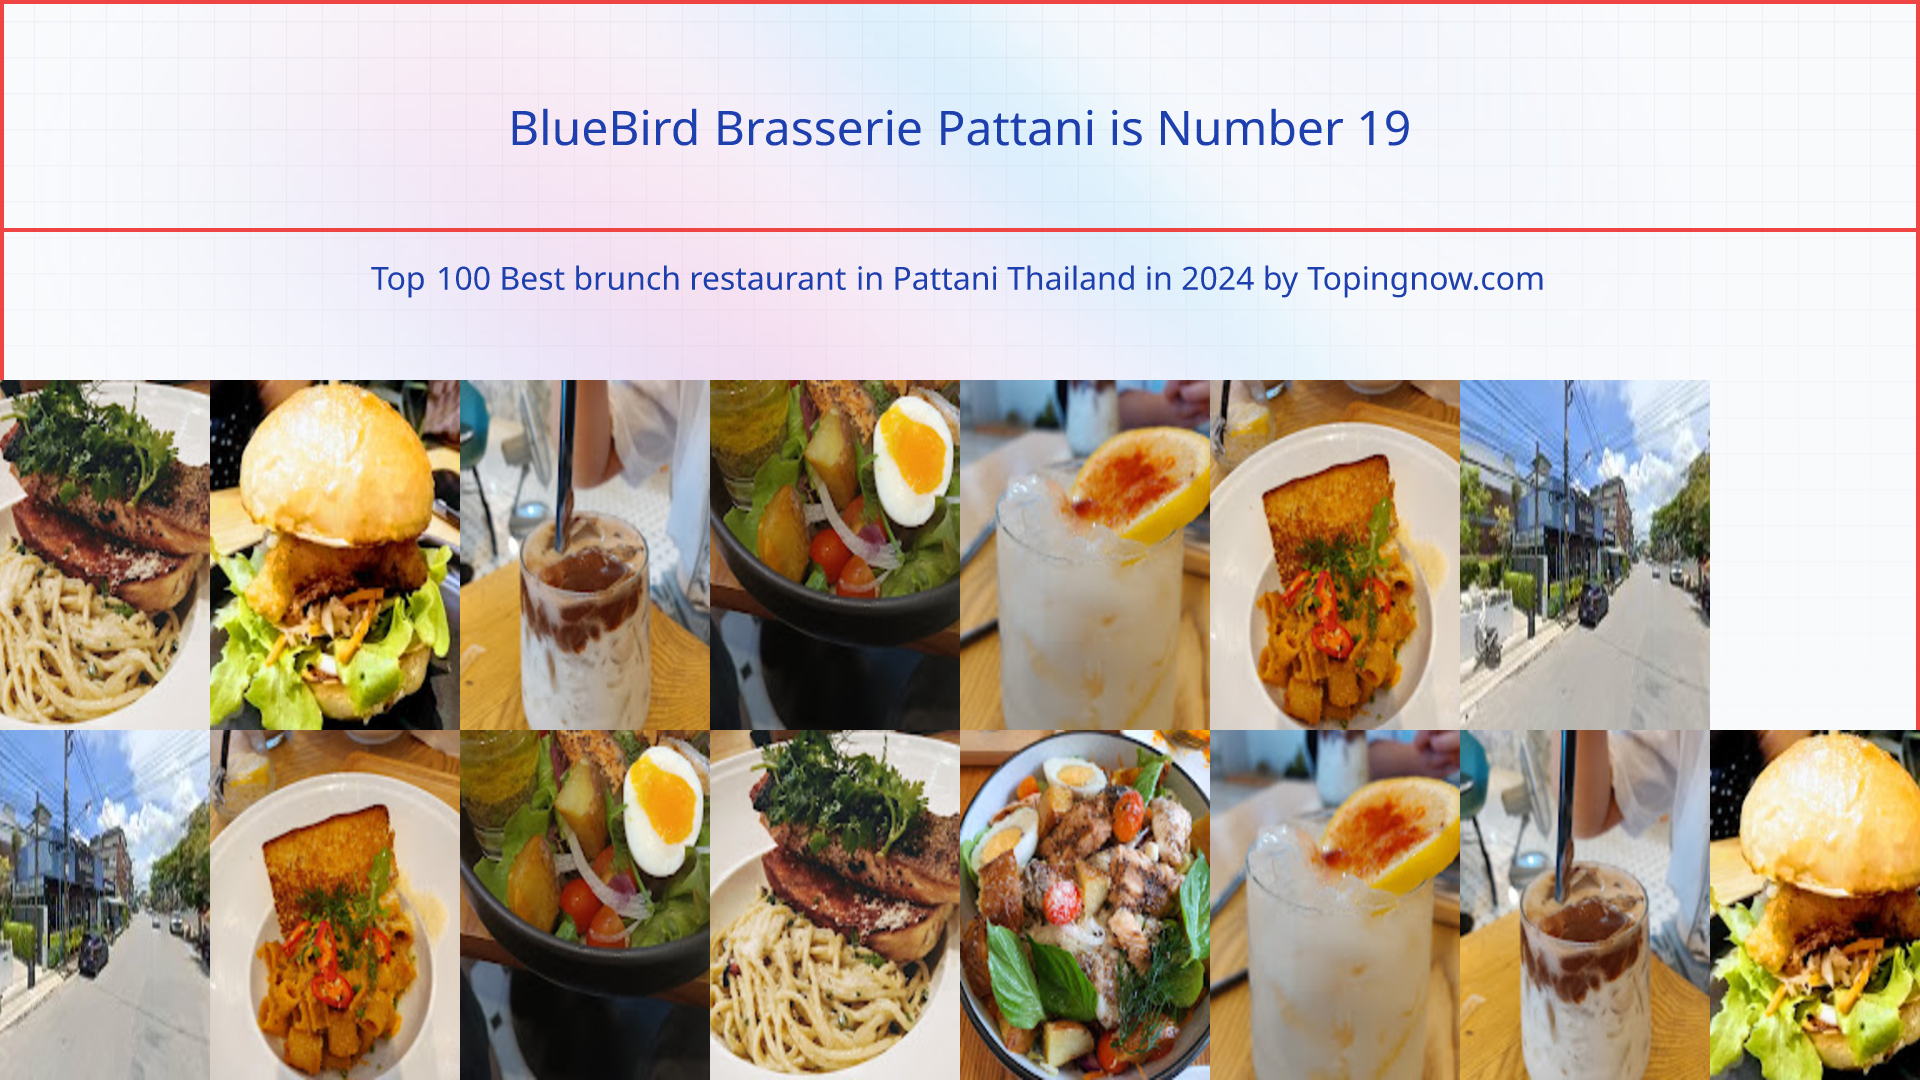 BlueBird Brasserie Pattani: Top 100 Best brunch restaurant in Pattani Thailand in 2024